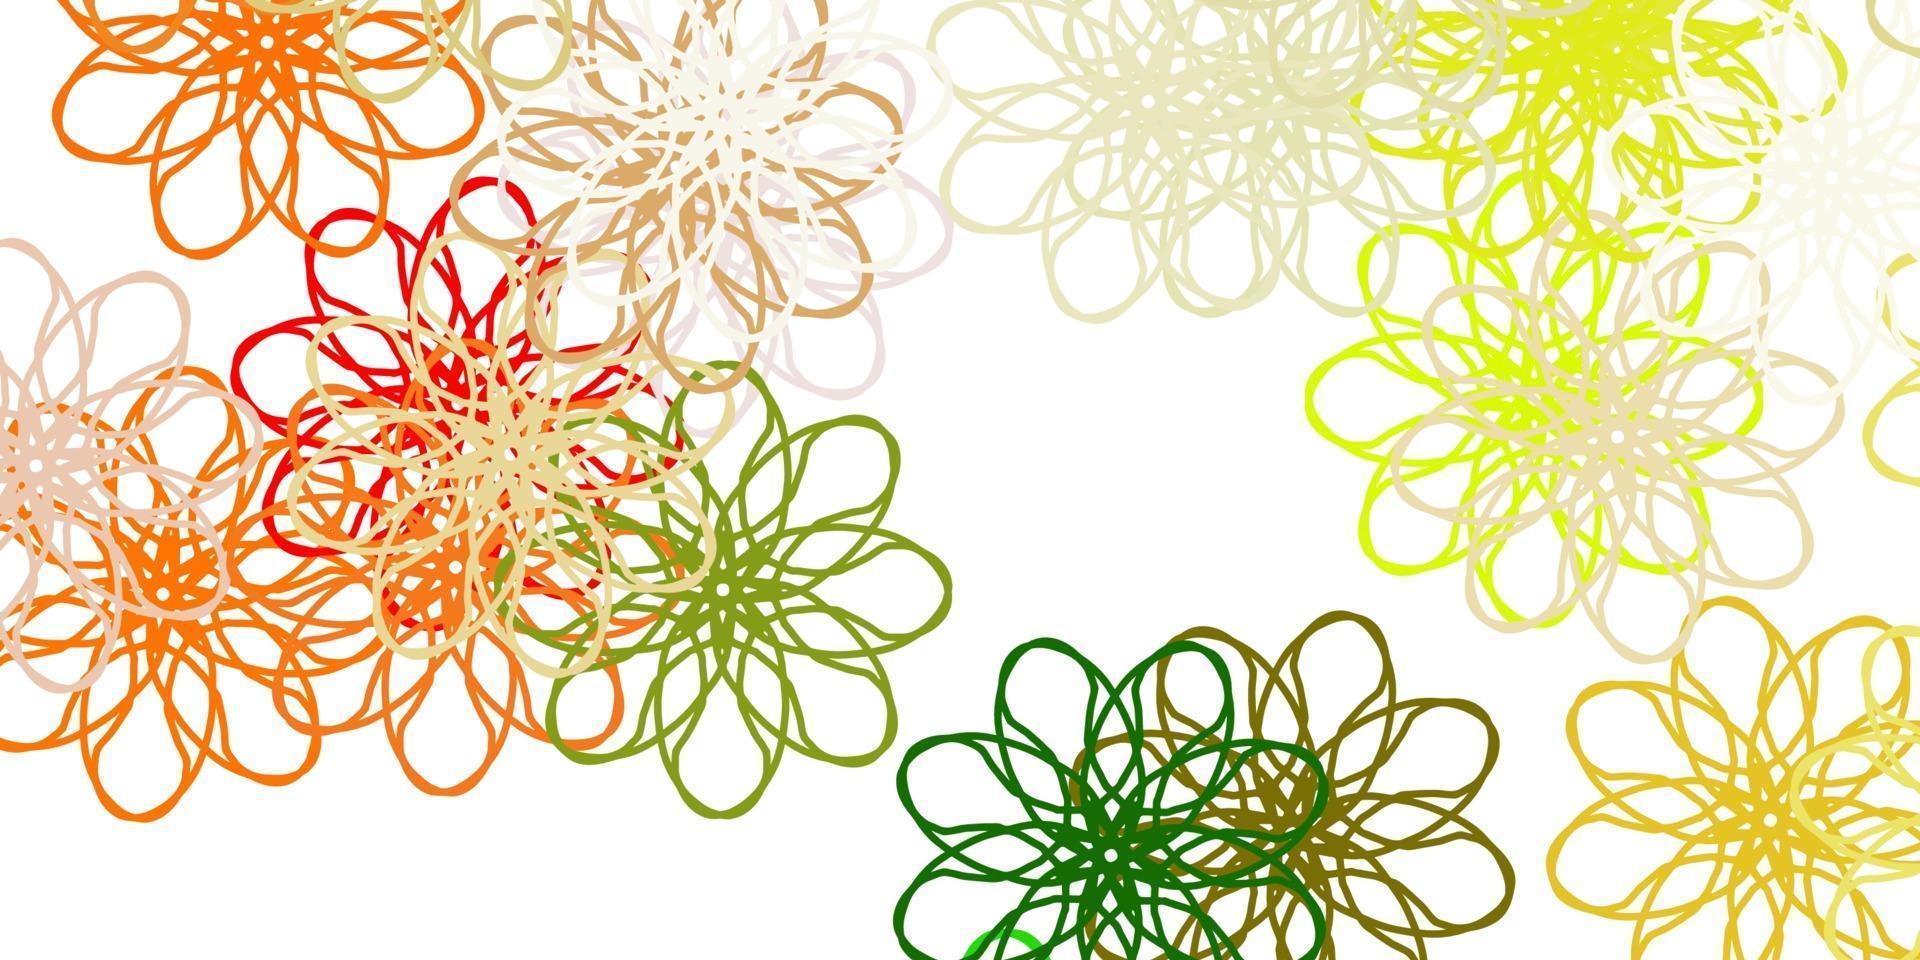 texture de doodle vecteur vert clair, jaune avec des fleurs.